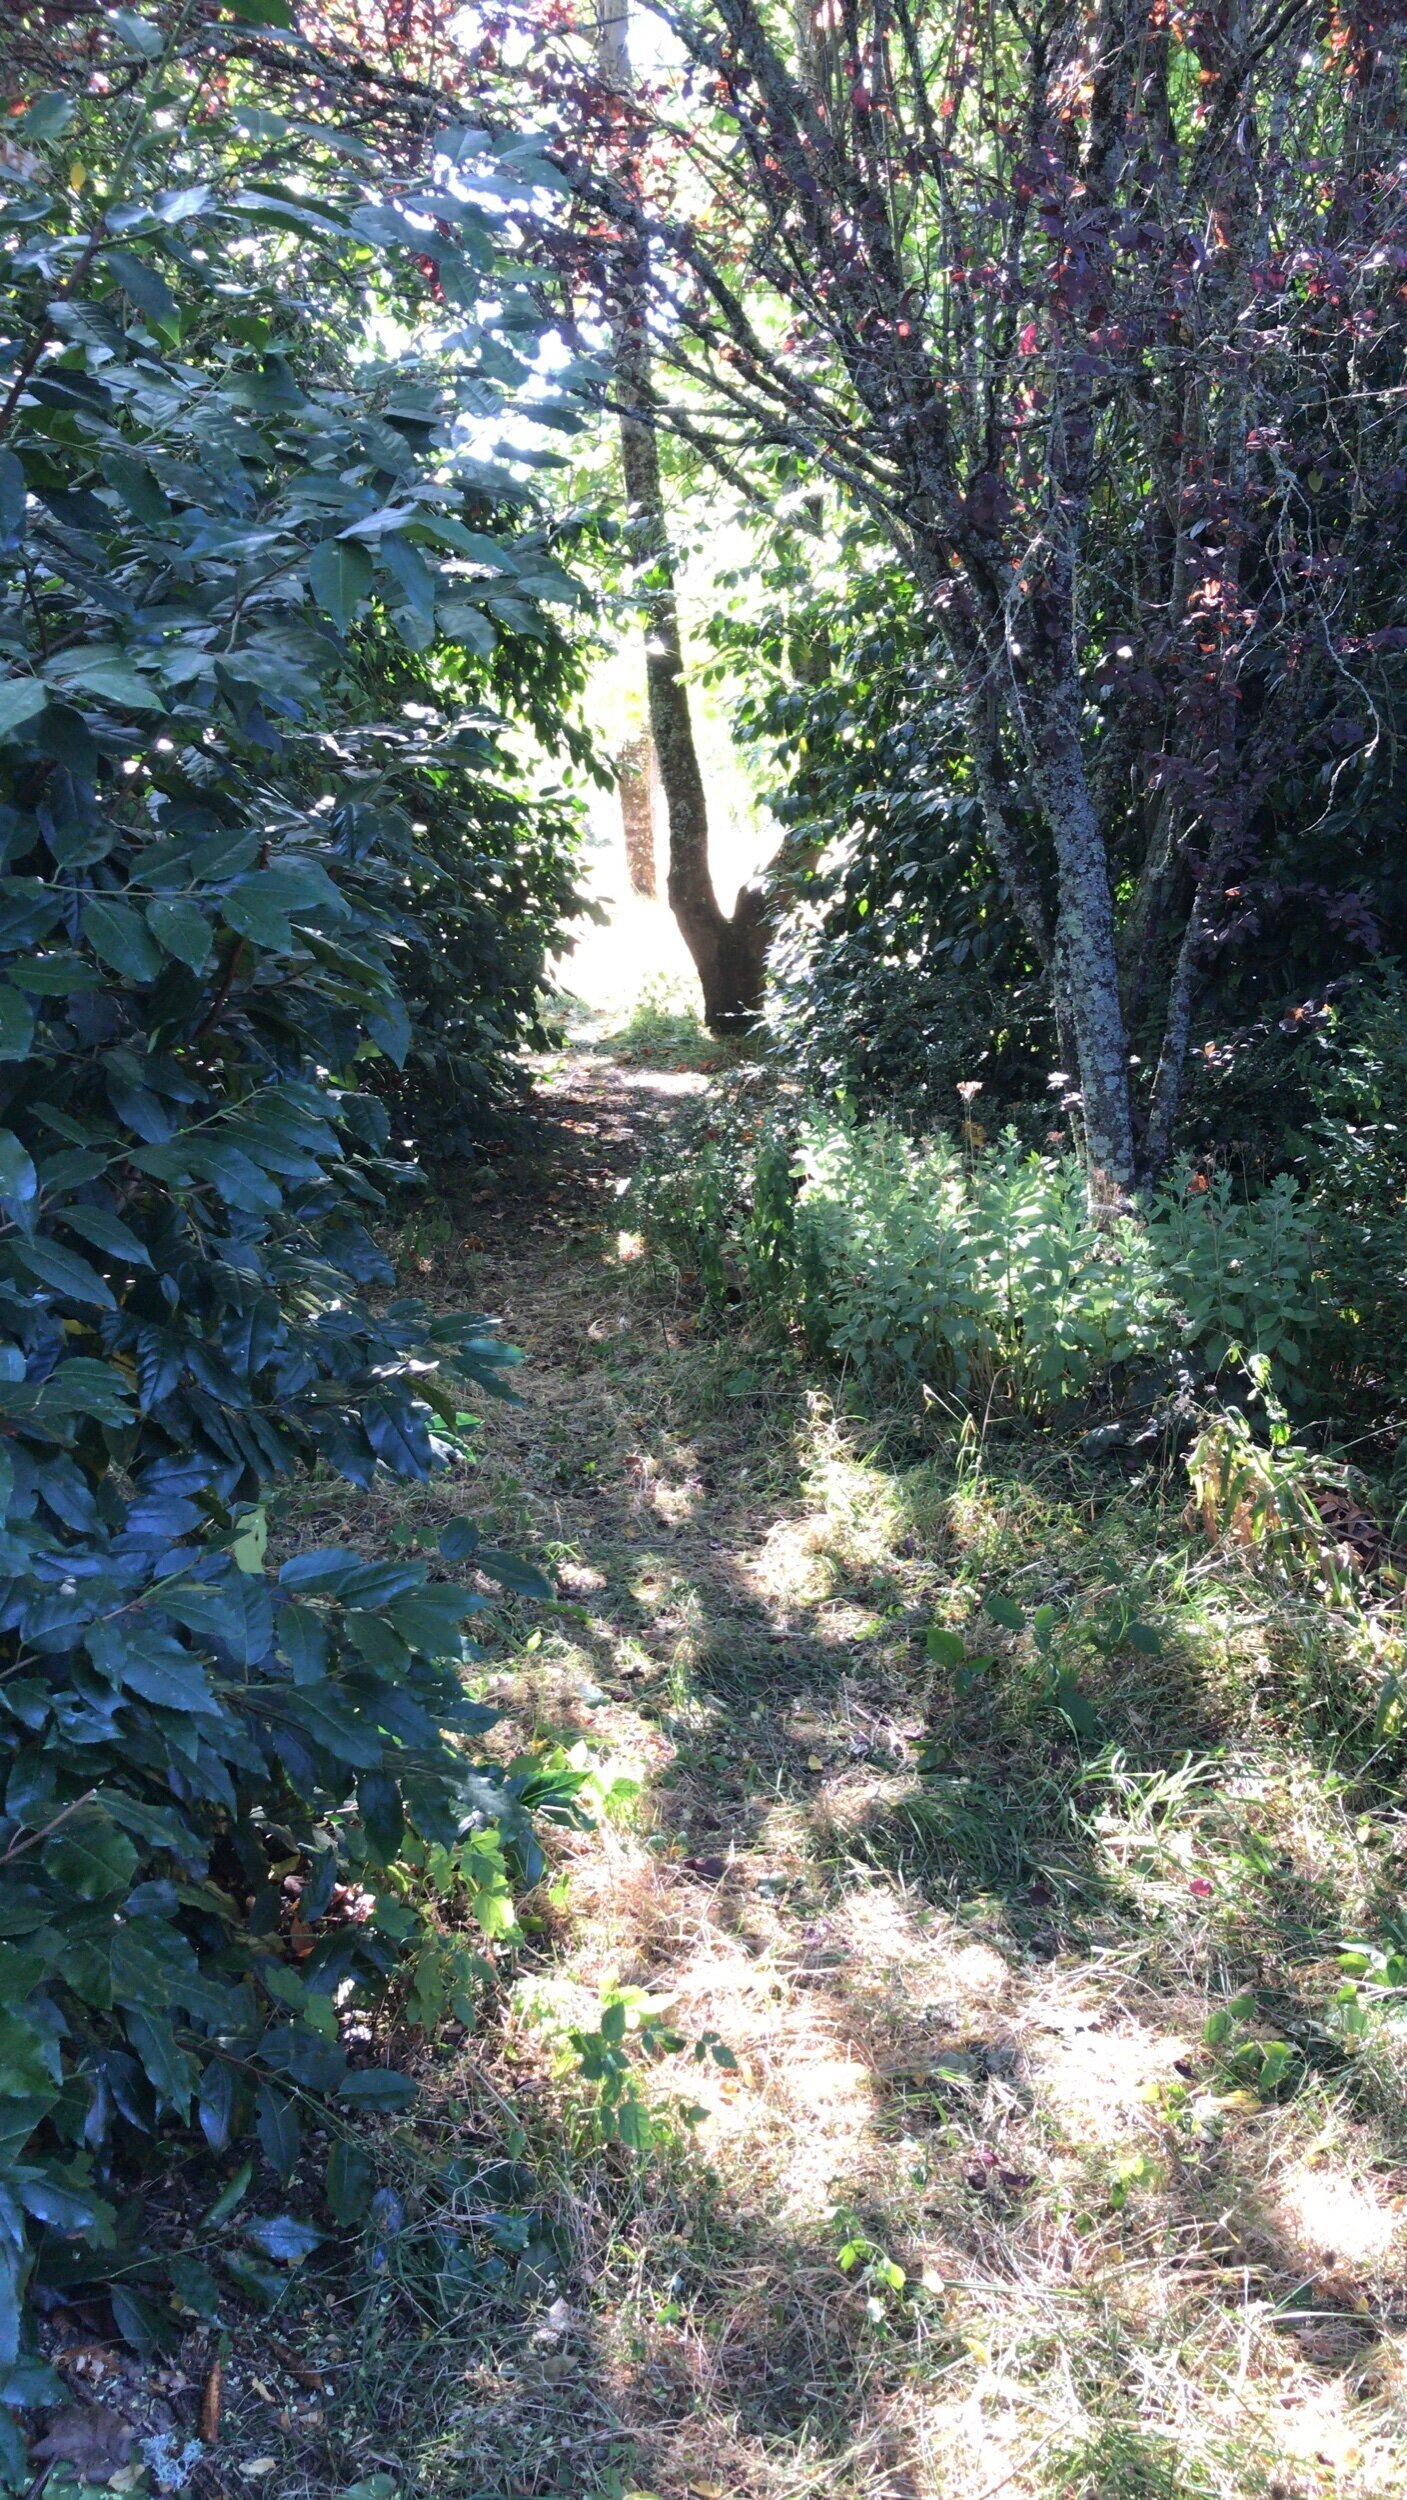 A pathway through the garden.